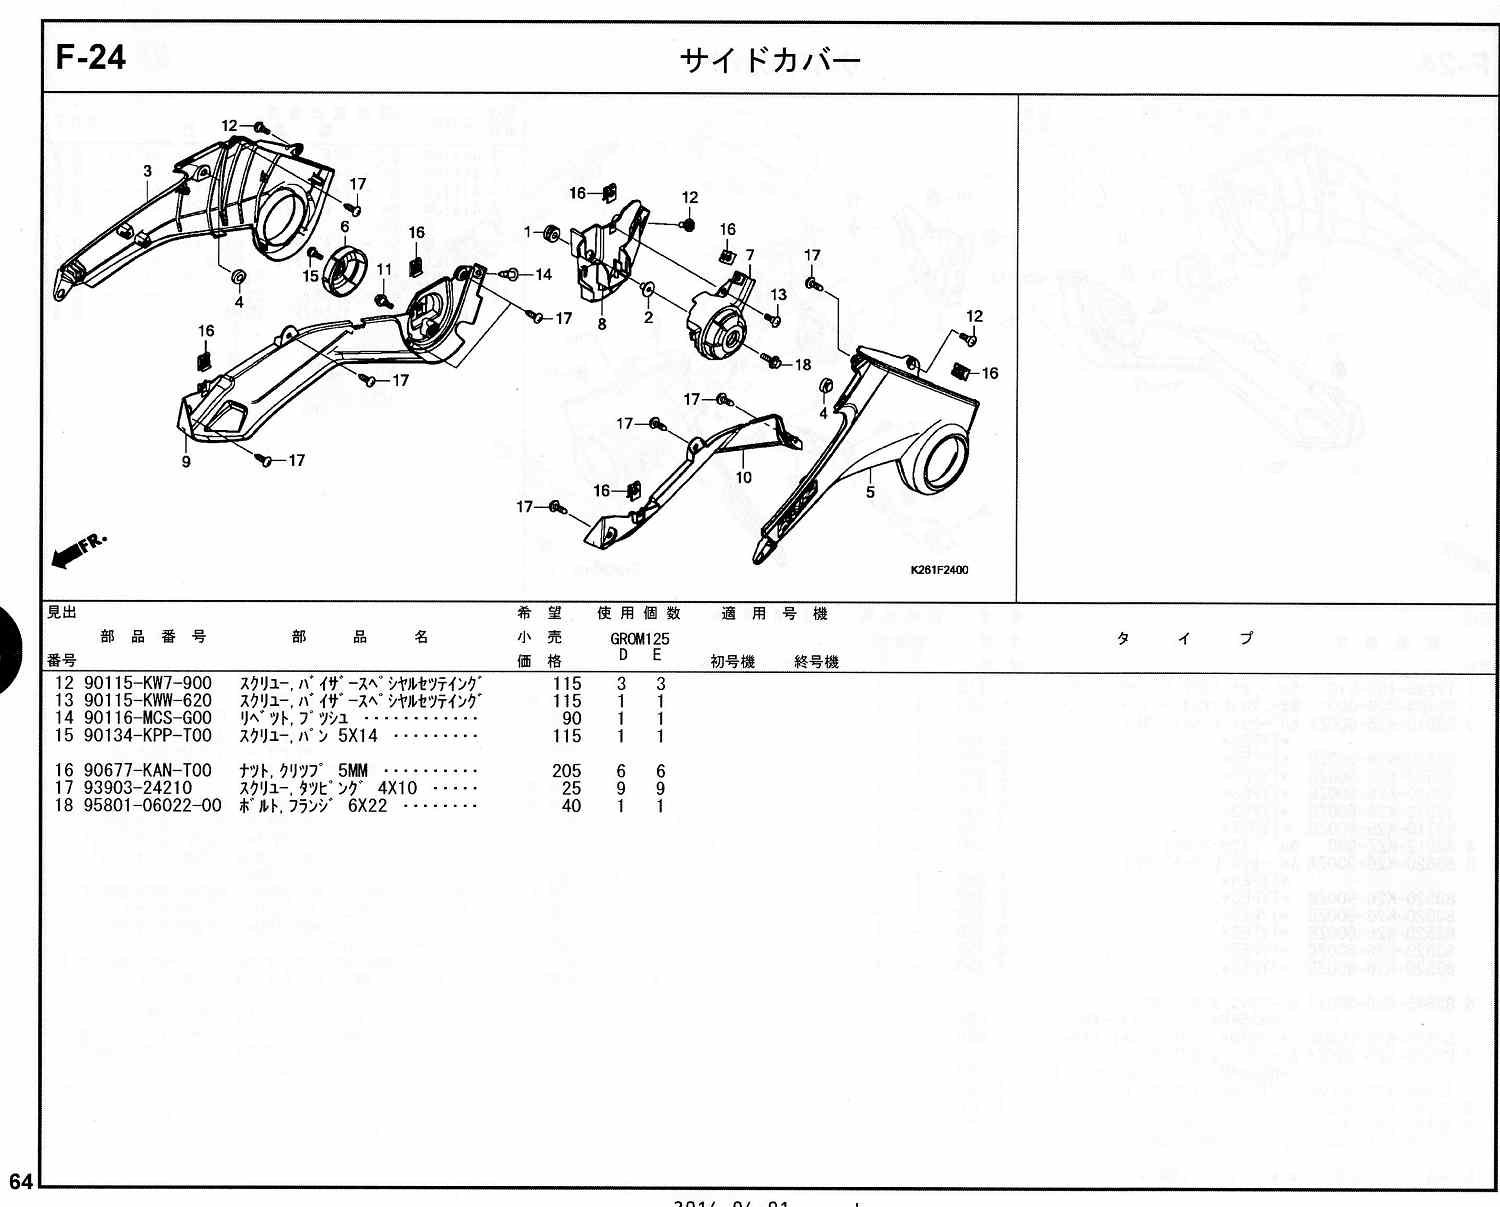 GROM ホンダ純正部品 ブロックNo.F-24 サイドカバー ページ63、64 